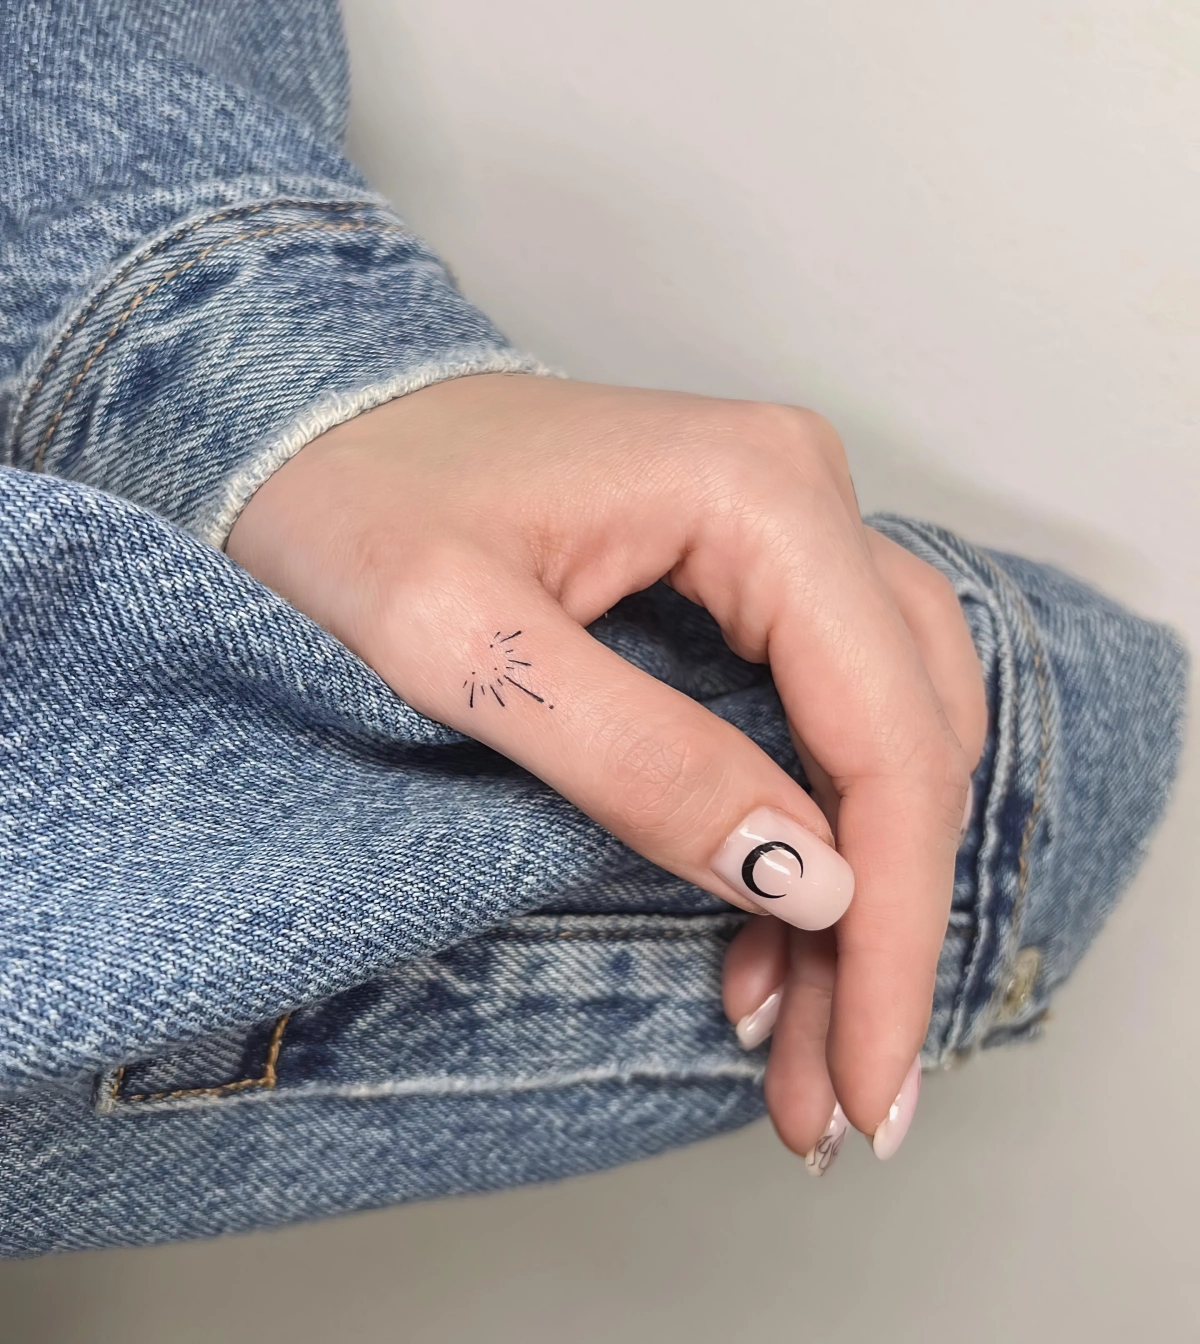 tatouage doigt femme discret manucure lune demi vernis nude